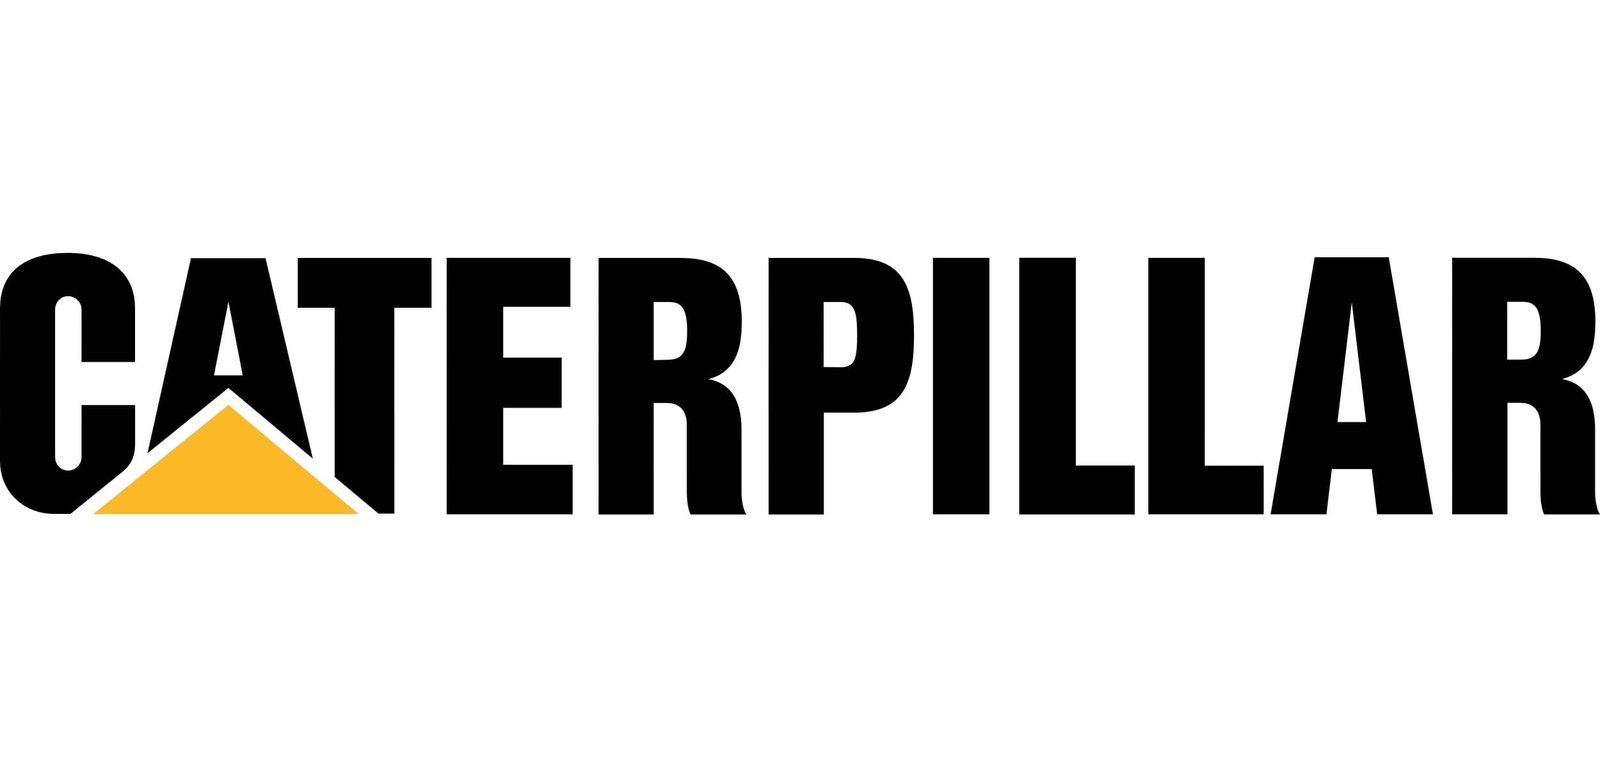 Caterpillar-logo.jpg File type: image/jpeg